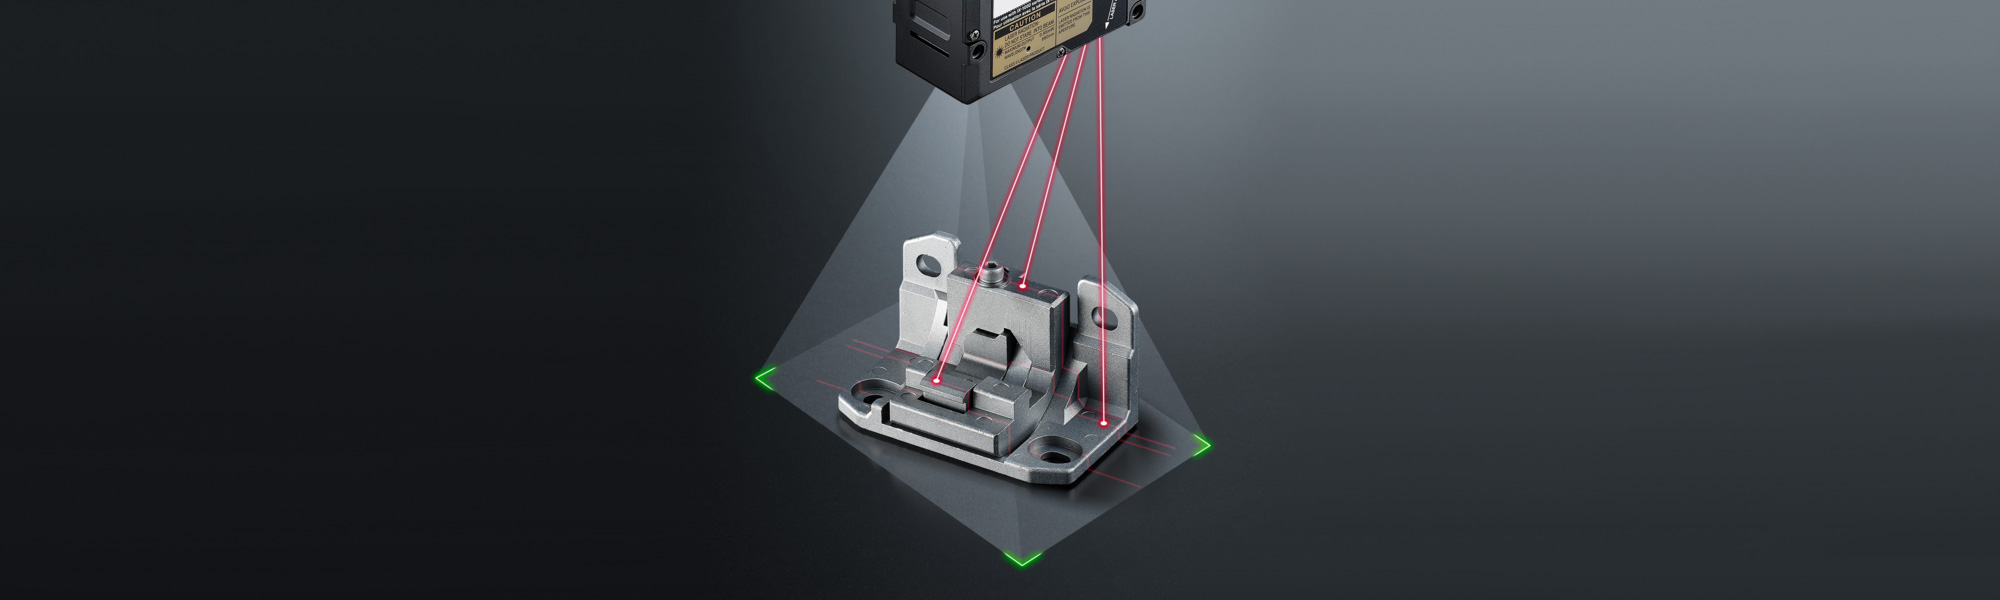 Fiber optic solutions for industrial optical sensing